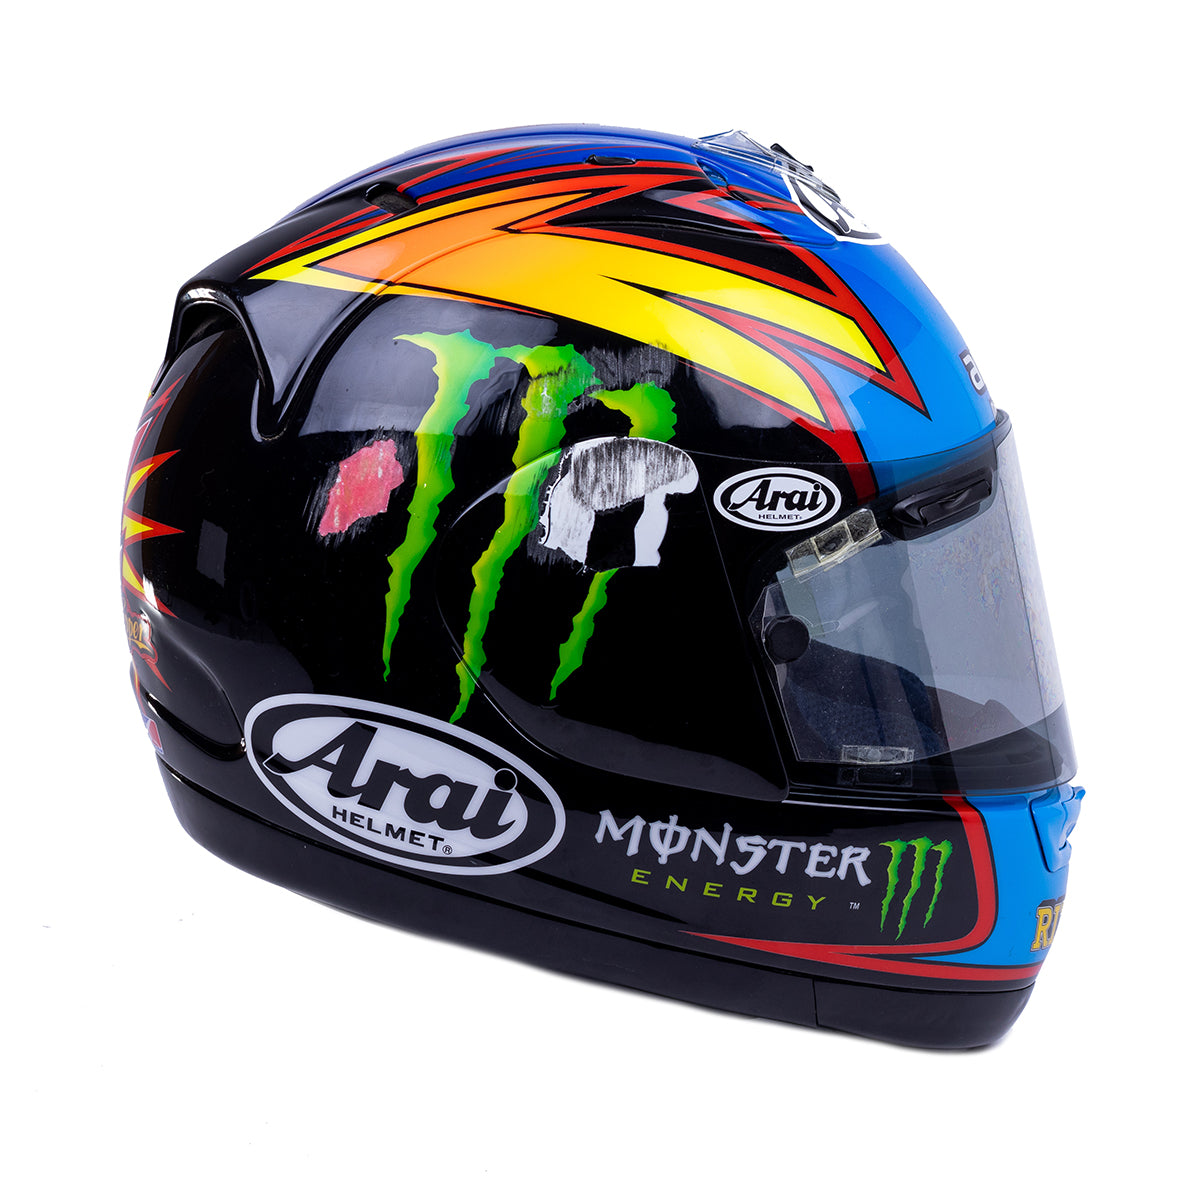 2007 John Hopkins Rizla Suzuki MotoGP Race Used Helmet